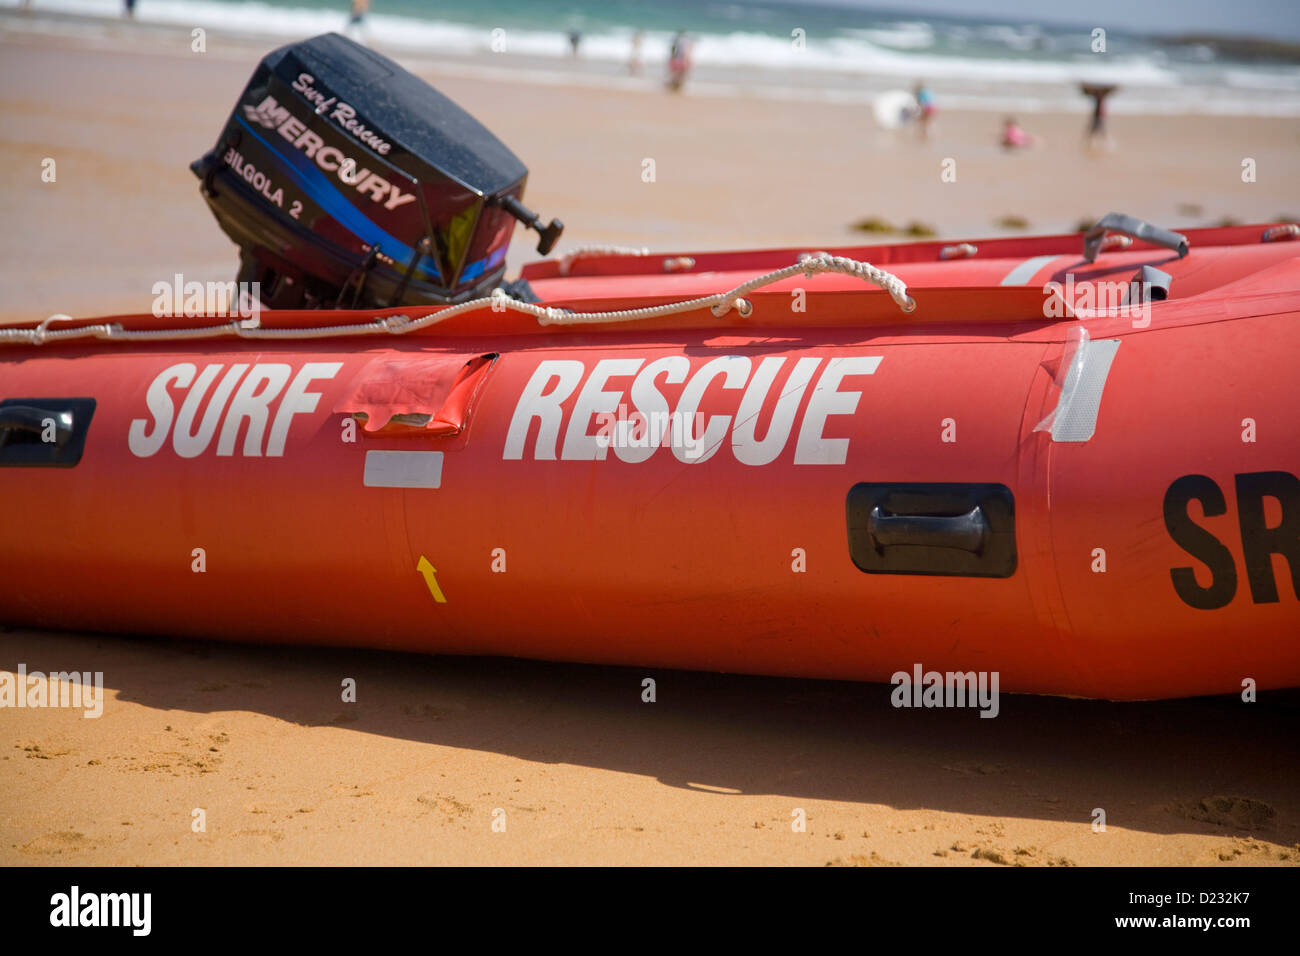 Canot de sauvetage avalon beach surf allongé sur la plage en attendant la prochaine urgence eau,Avalon,Sydney, Australie Banque D'Images